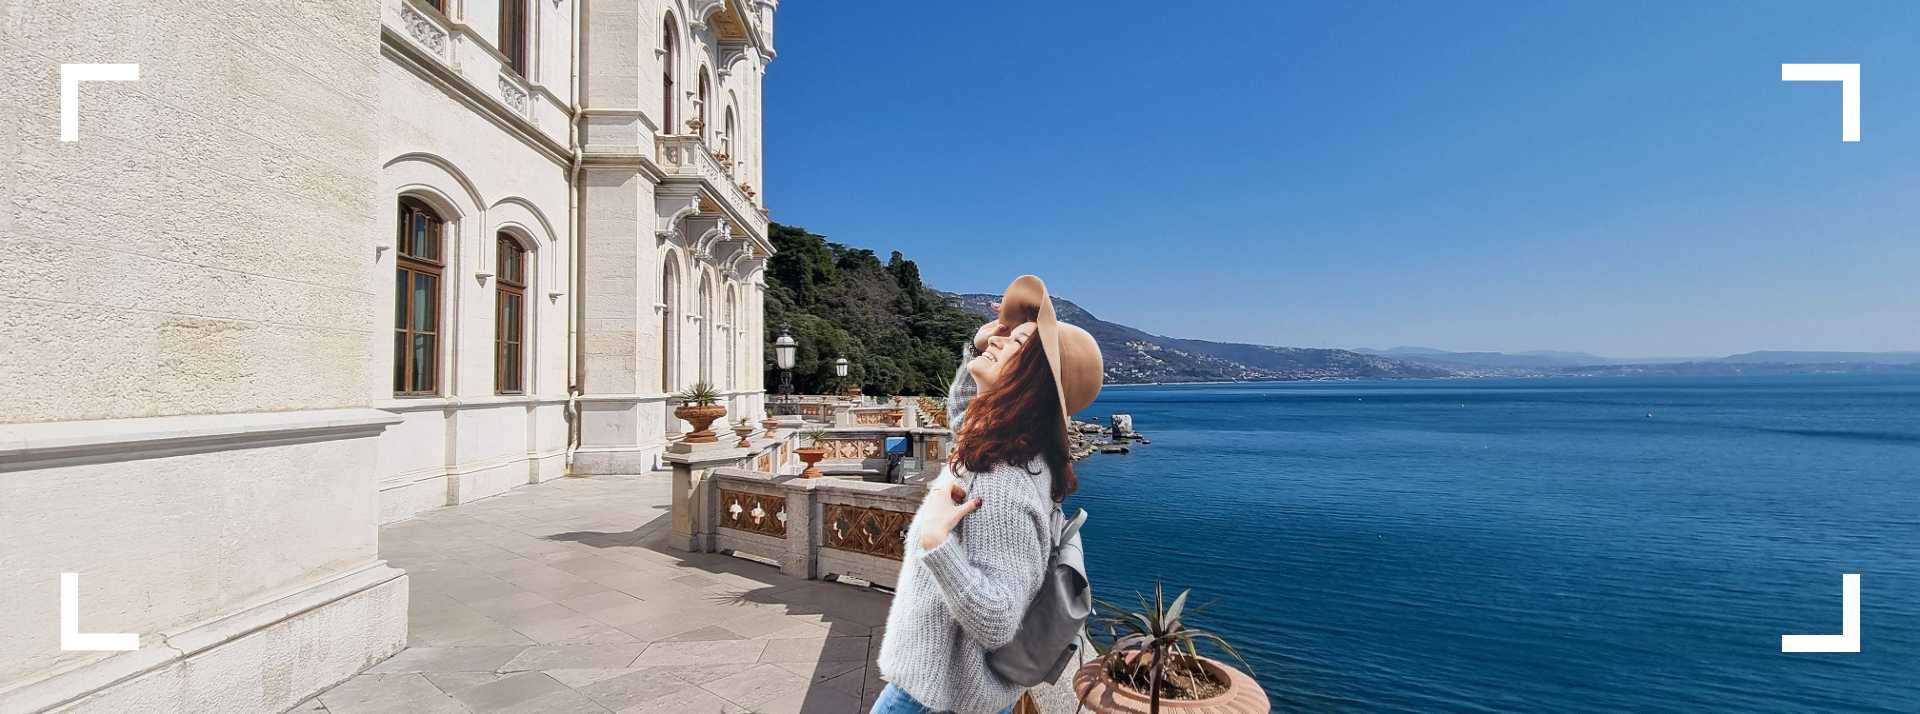 Scopri cosa fare nel tuo prossimo viaggio a Trieste Image